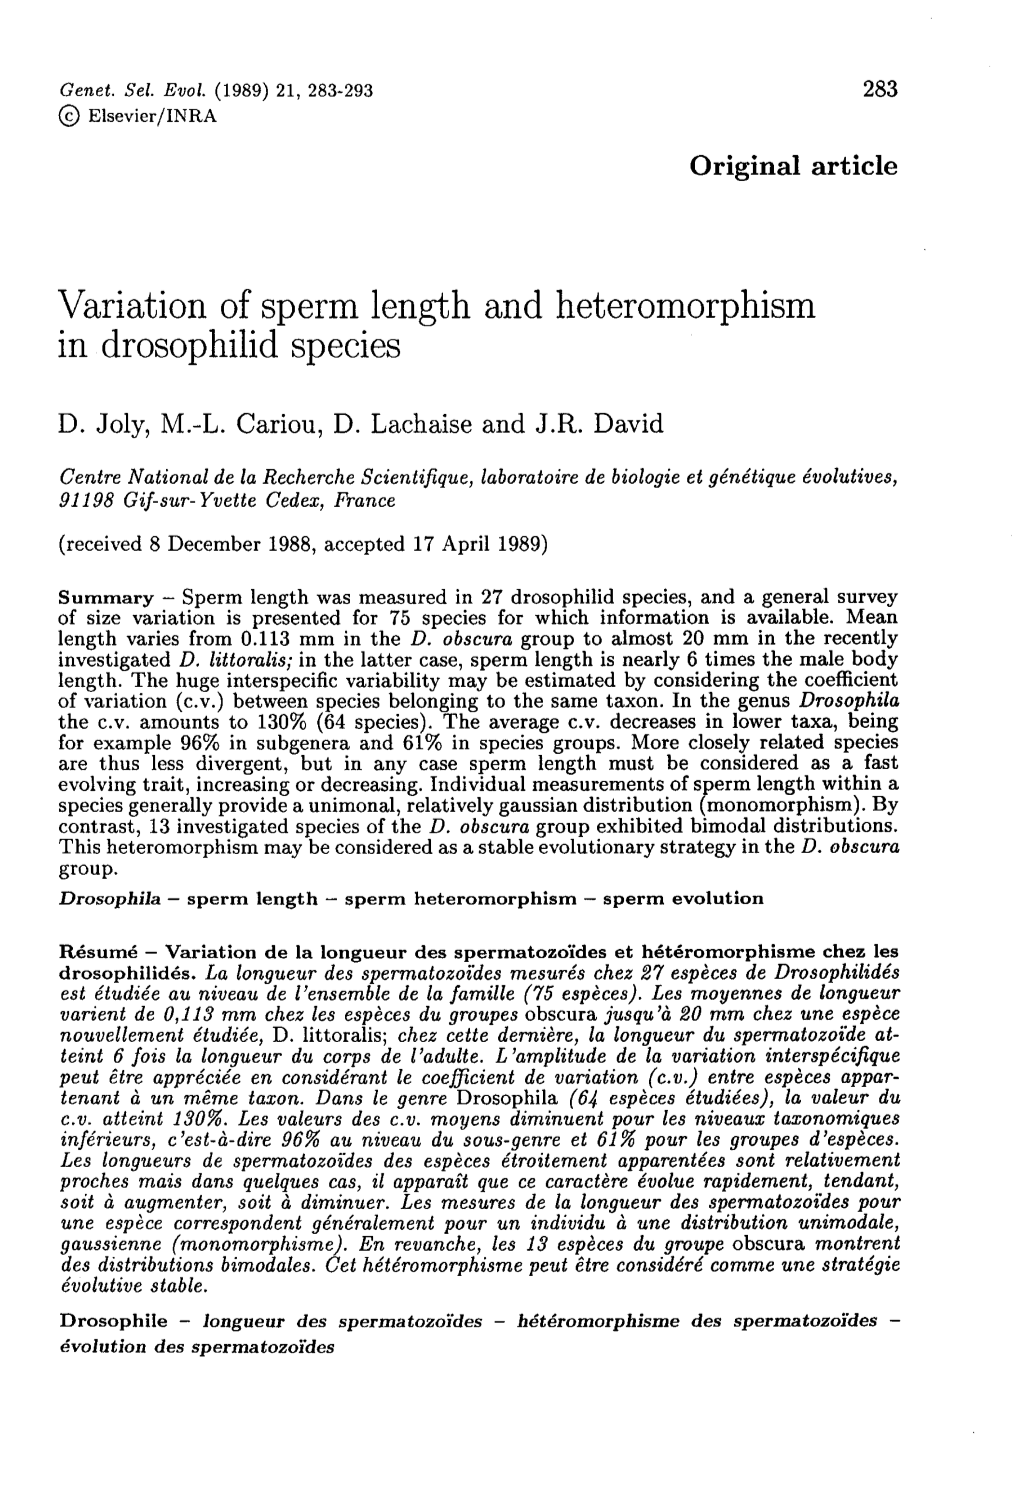 Variation of Sperm Length and Heteromorphism in Drosophilid Species